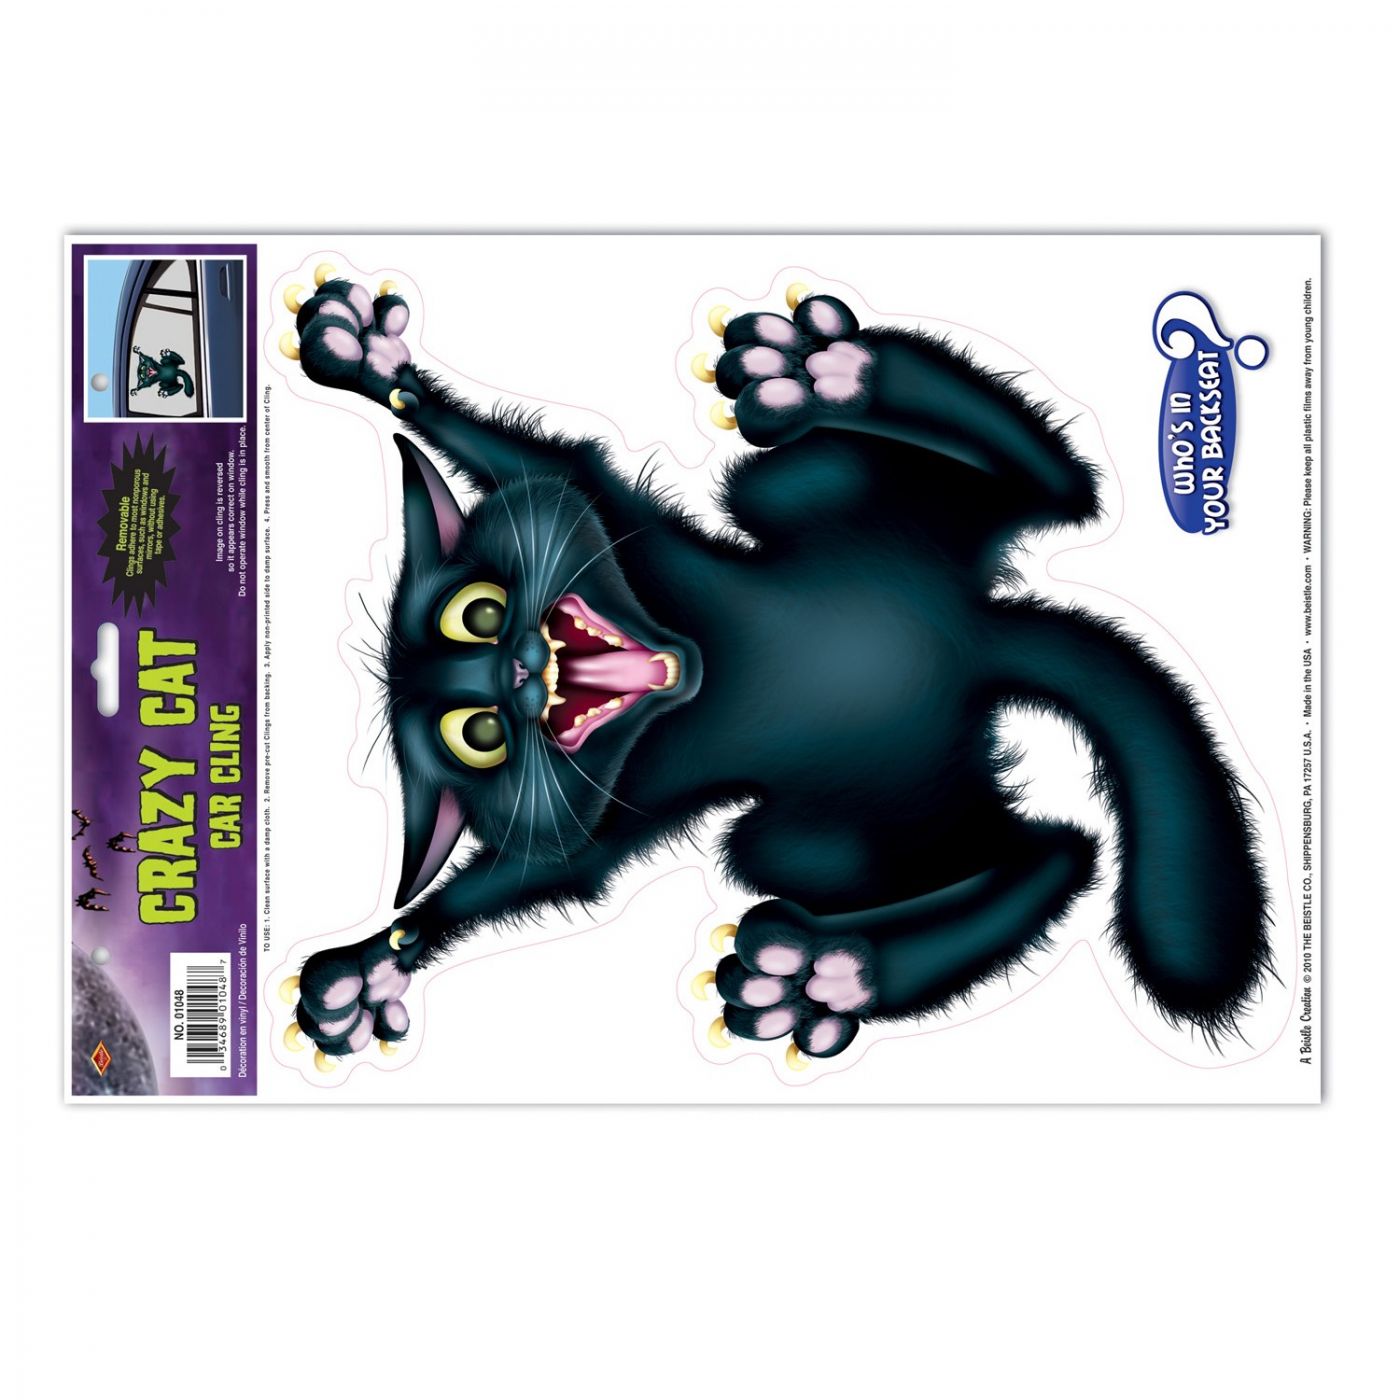 Crazy Cat Car Cling (12) image